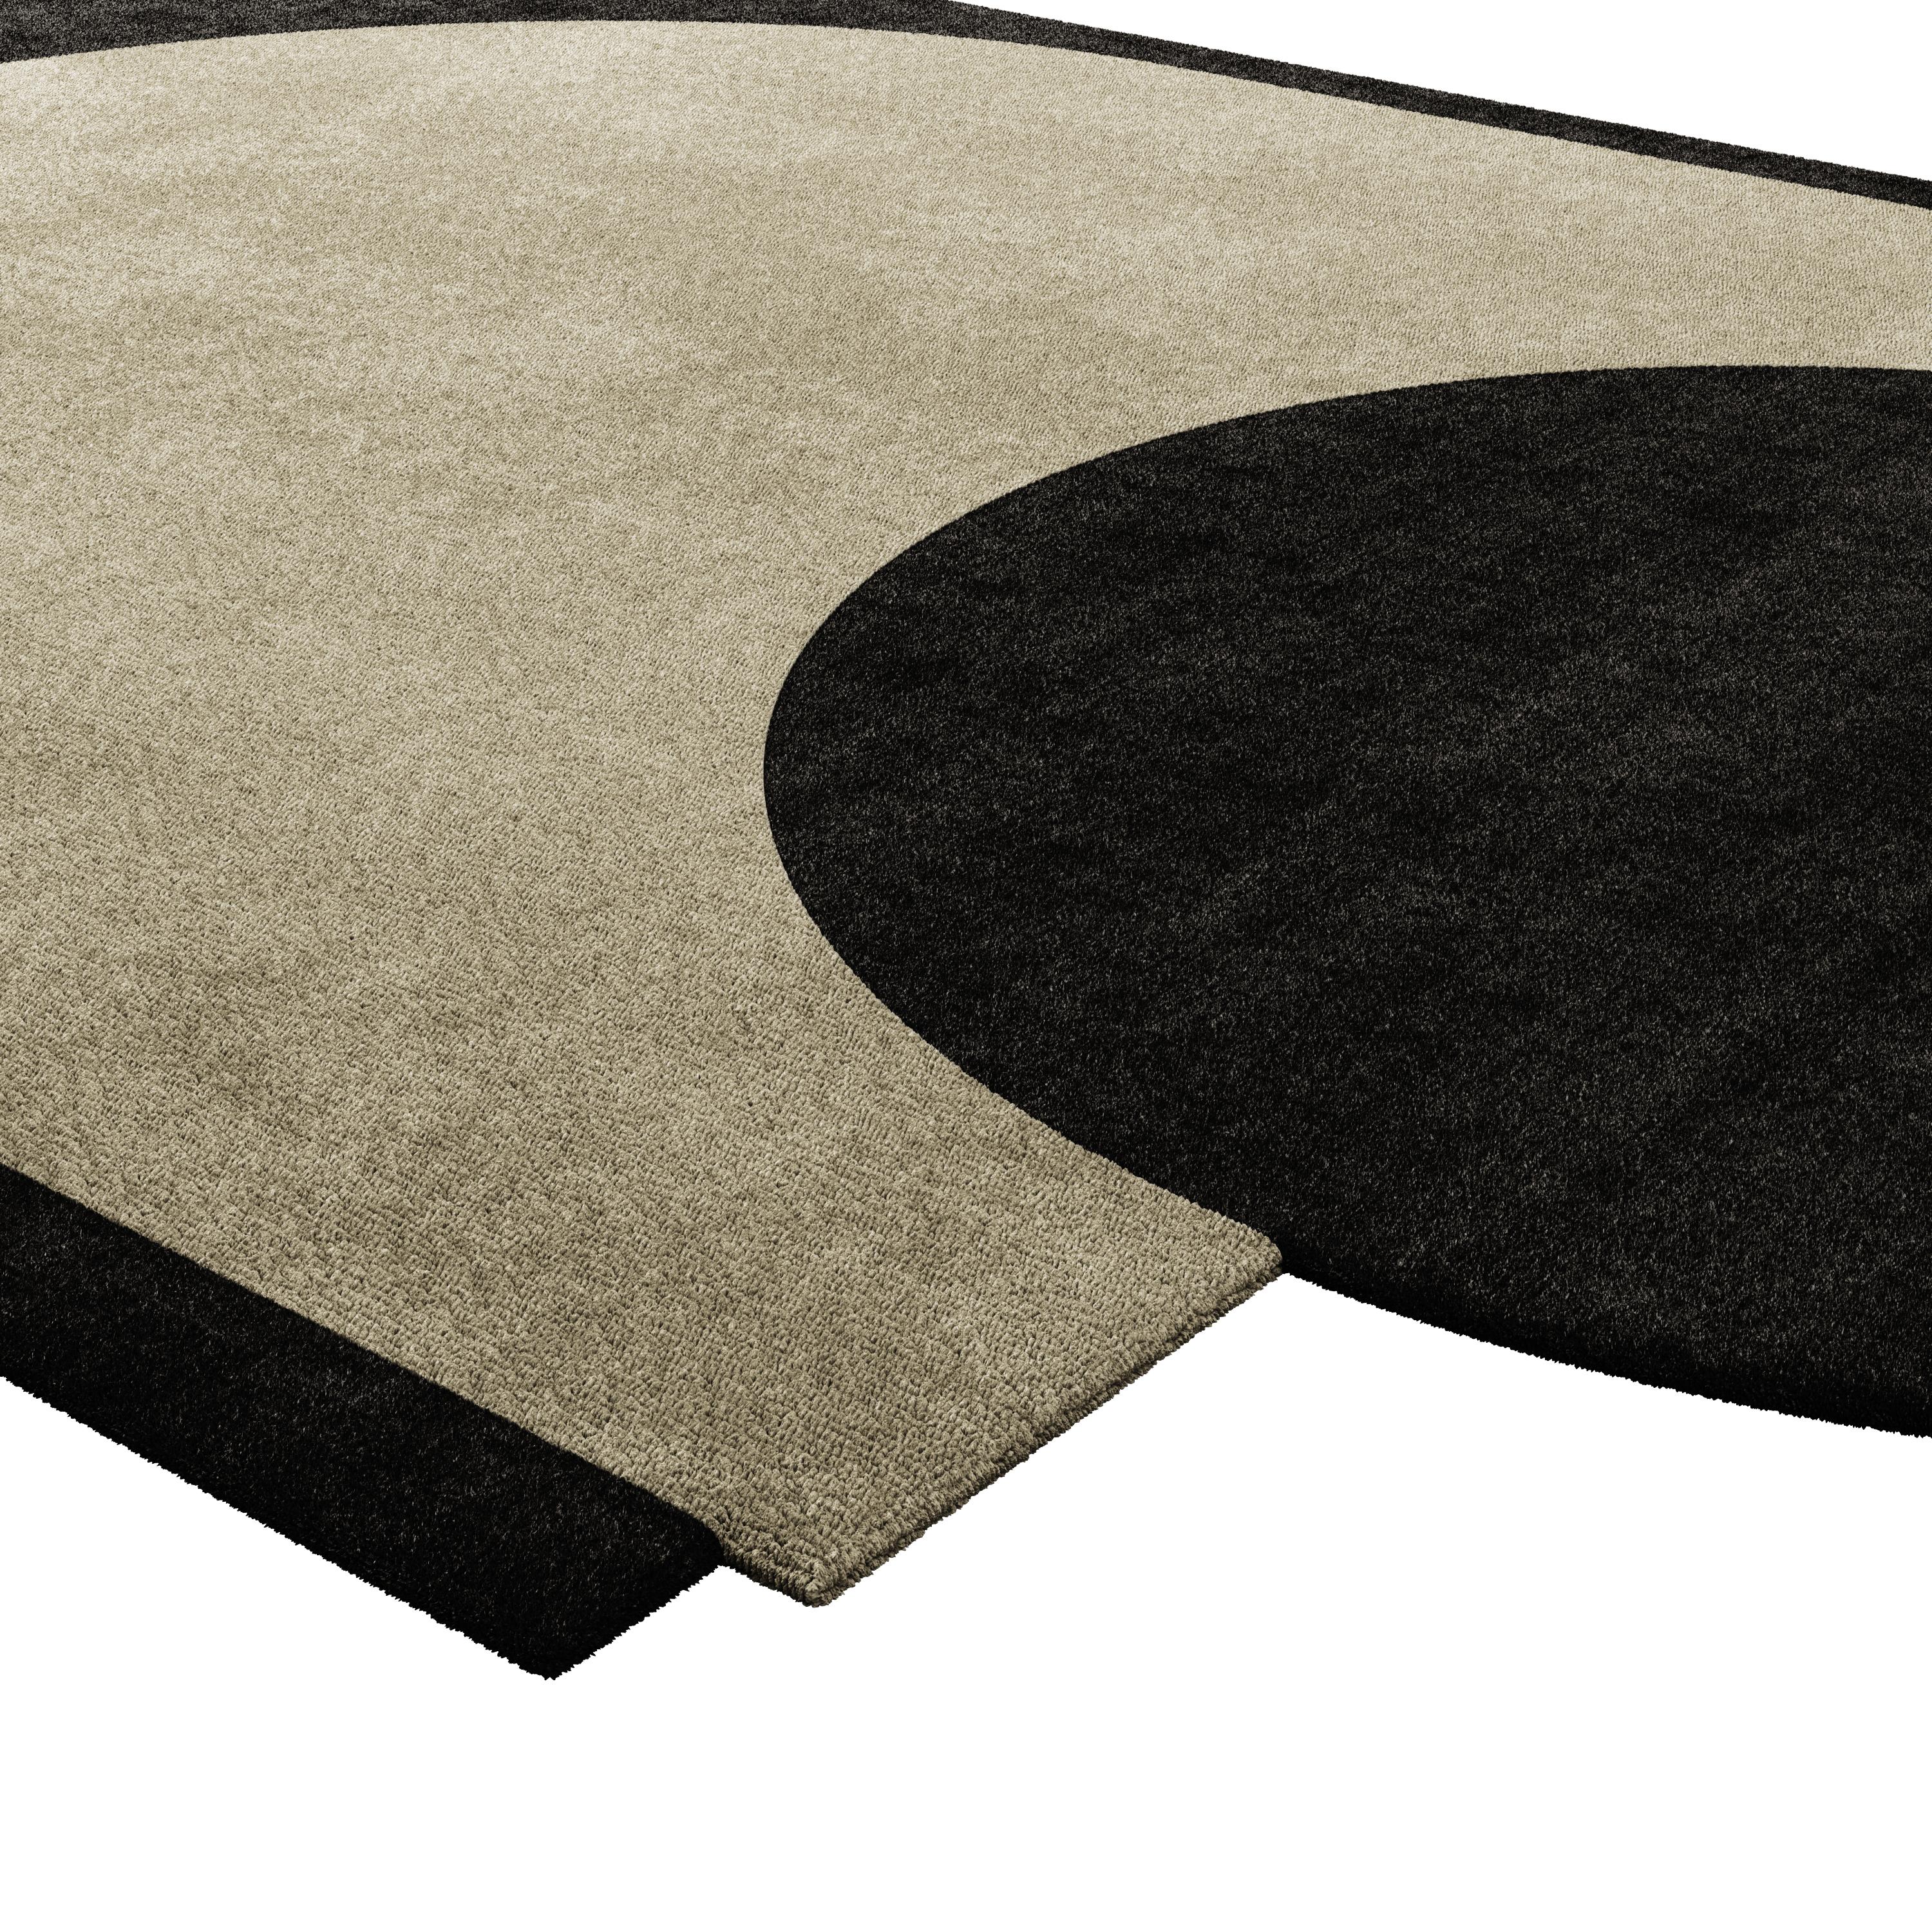 Das Lyocell-Rohmaterial verleiht dem Teppich eine glatte Textur und einen dezenten Glanz, was ihn zu einer raffinierten Ergänzung für verschiedene Räume macht. Seine minimalistische Ästhetik, kombiniert mit der luxuriösen Qualität von Lyocell, macht